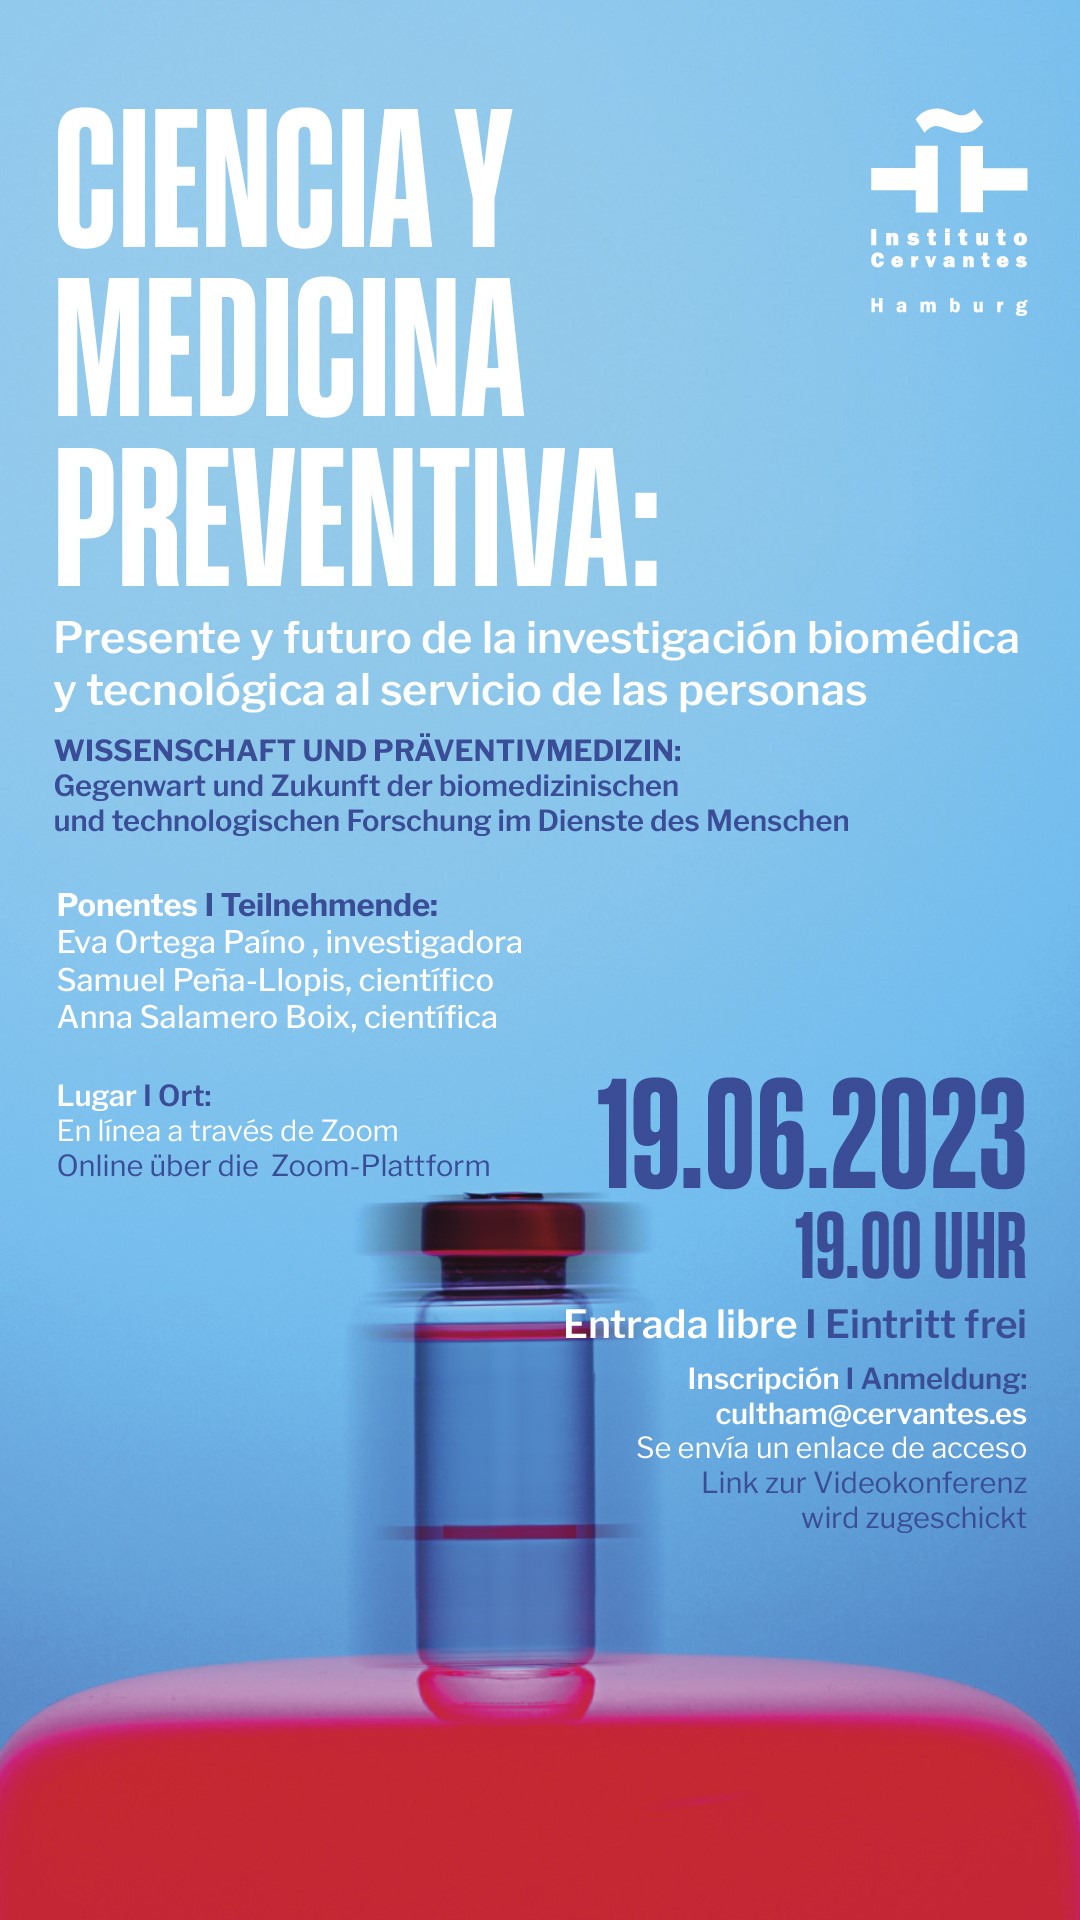 Ciencia y medicina preventiva: Presente y futuro de la investigación biomédica y tecnológica al servicio de las personas